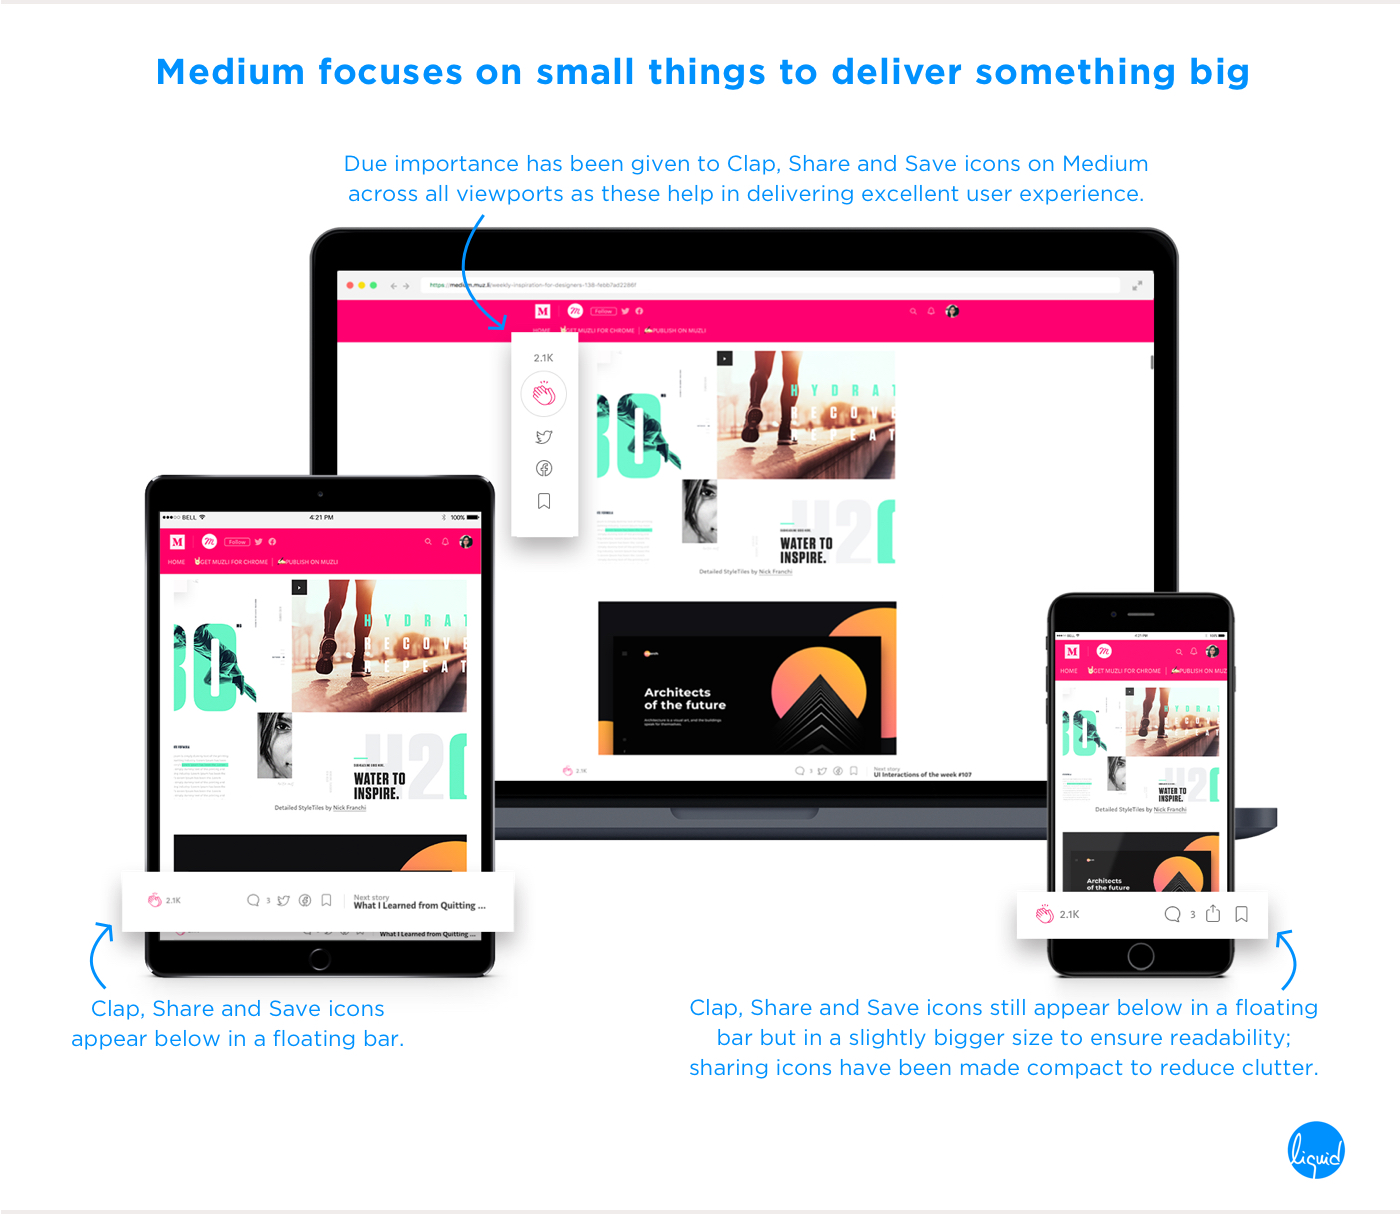 Digital Customer Experience of Medium across all viewports